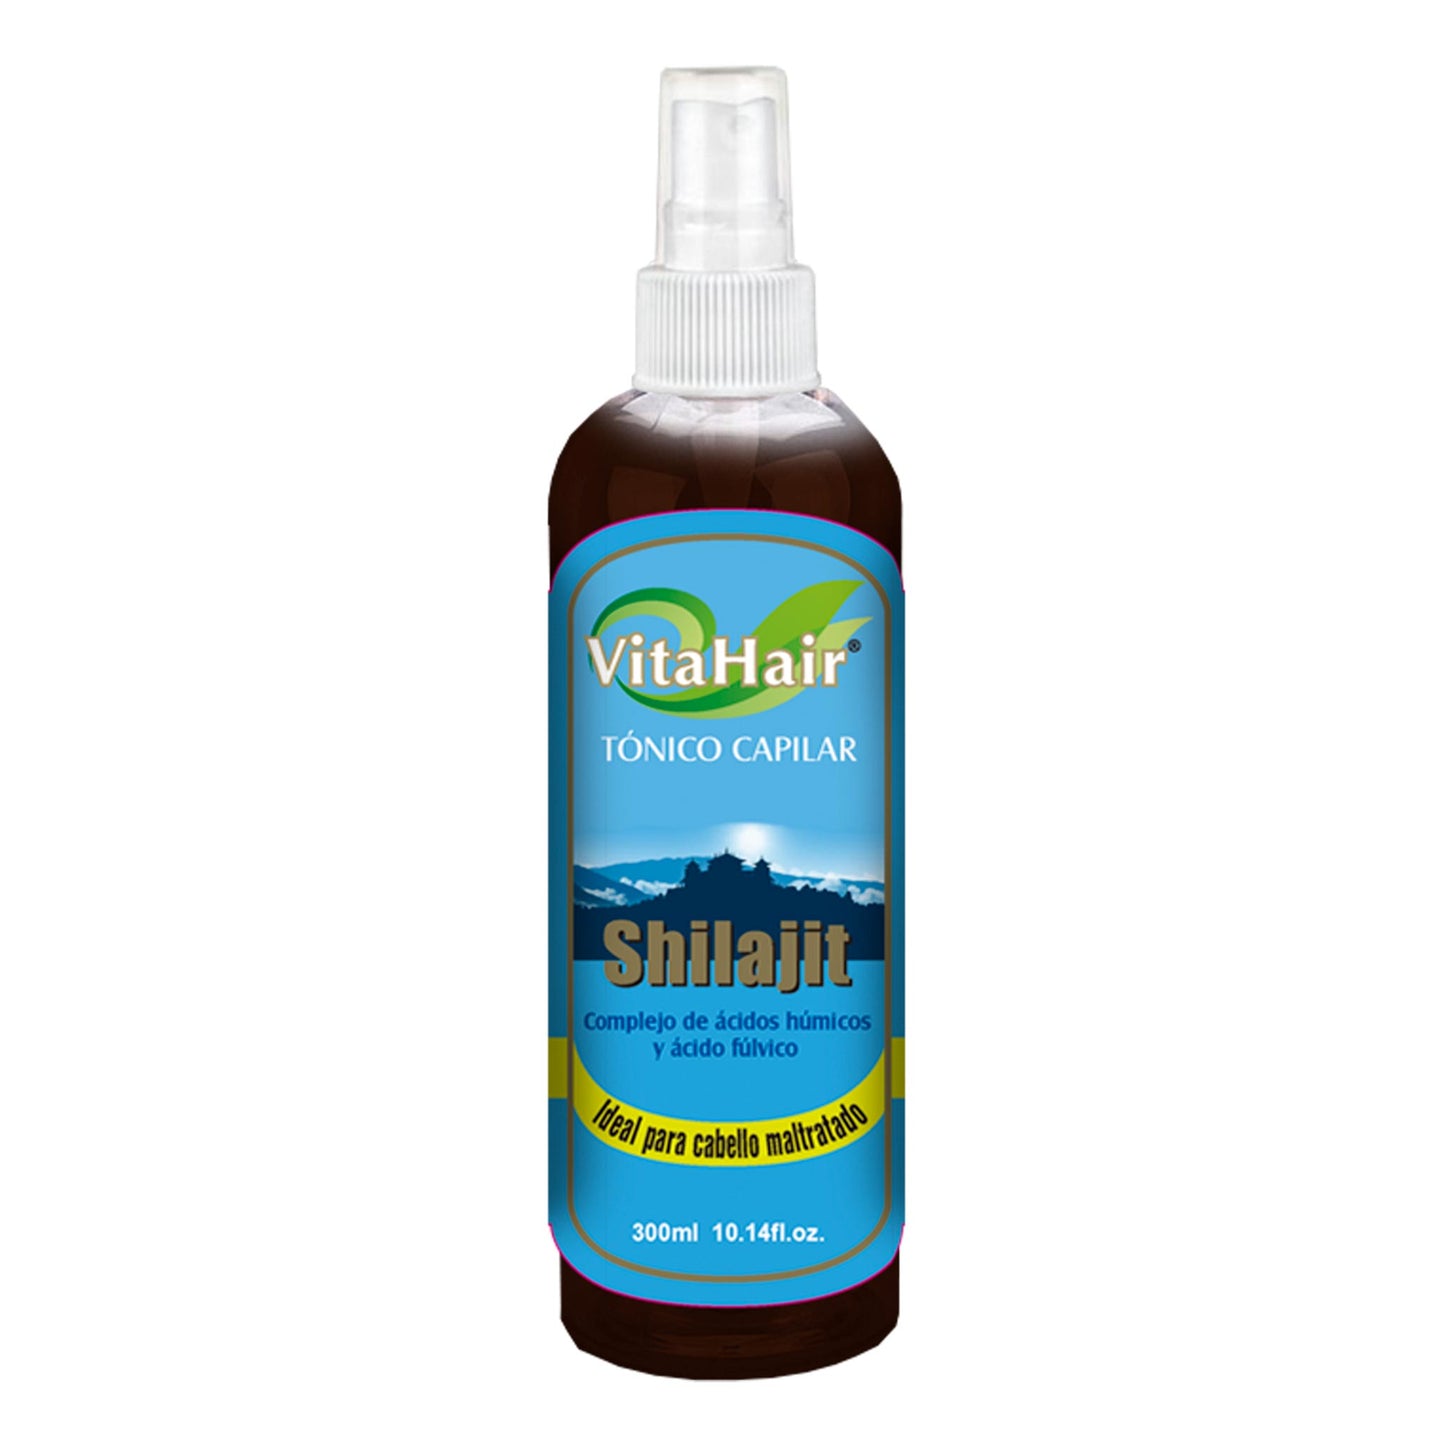 VITAHAIR ® spray capilar 300ml